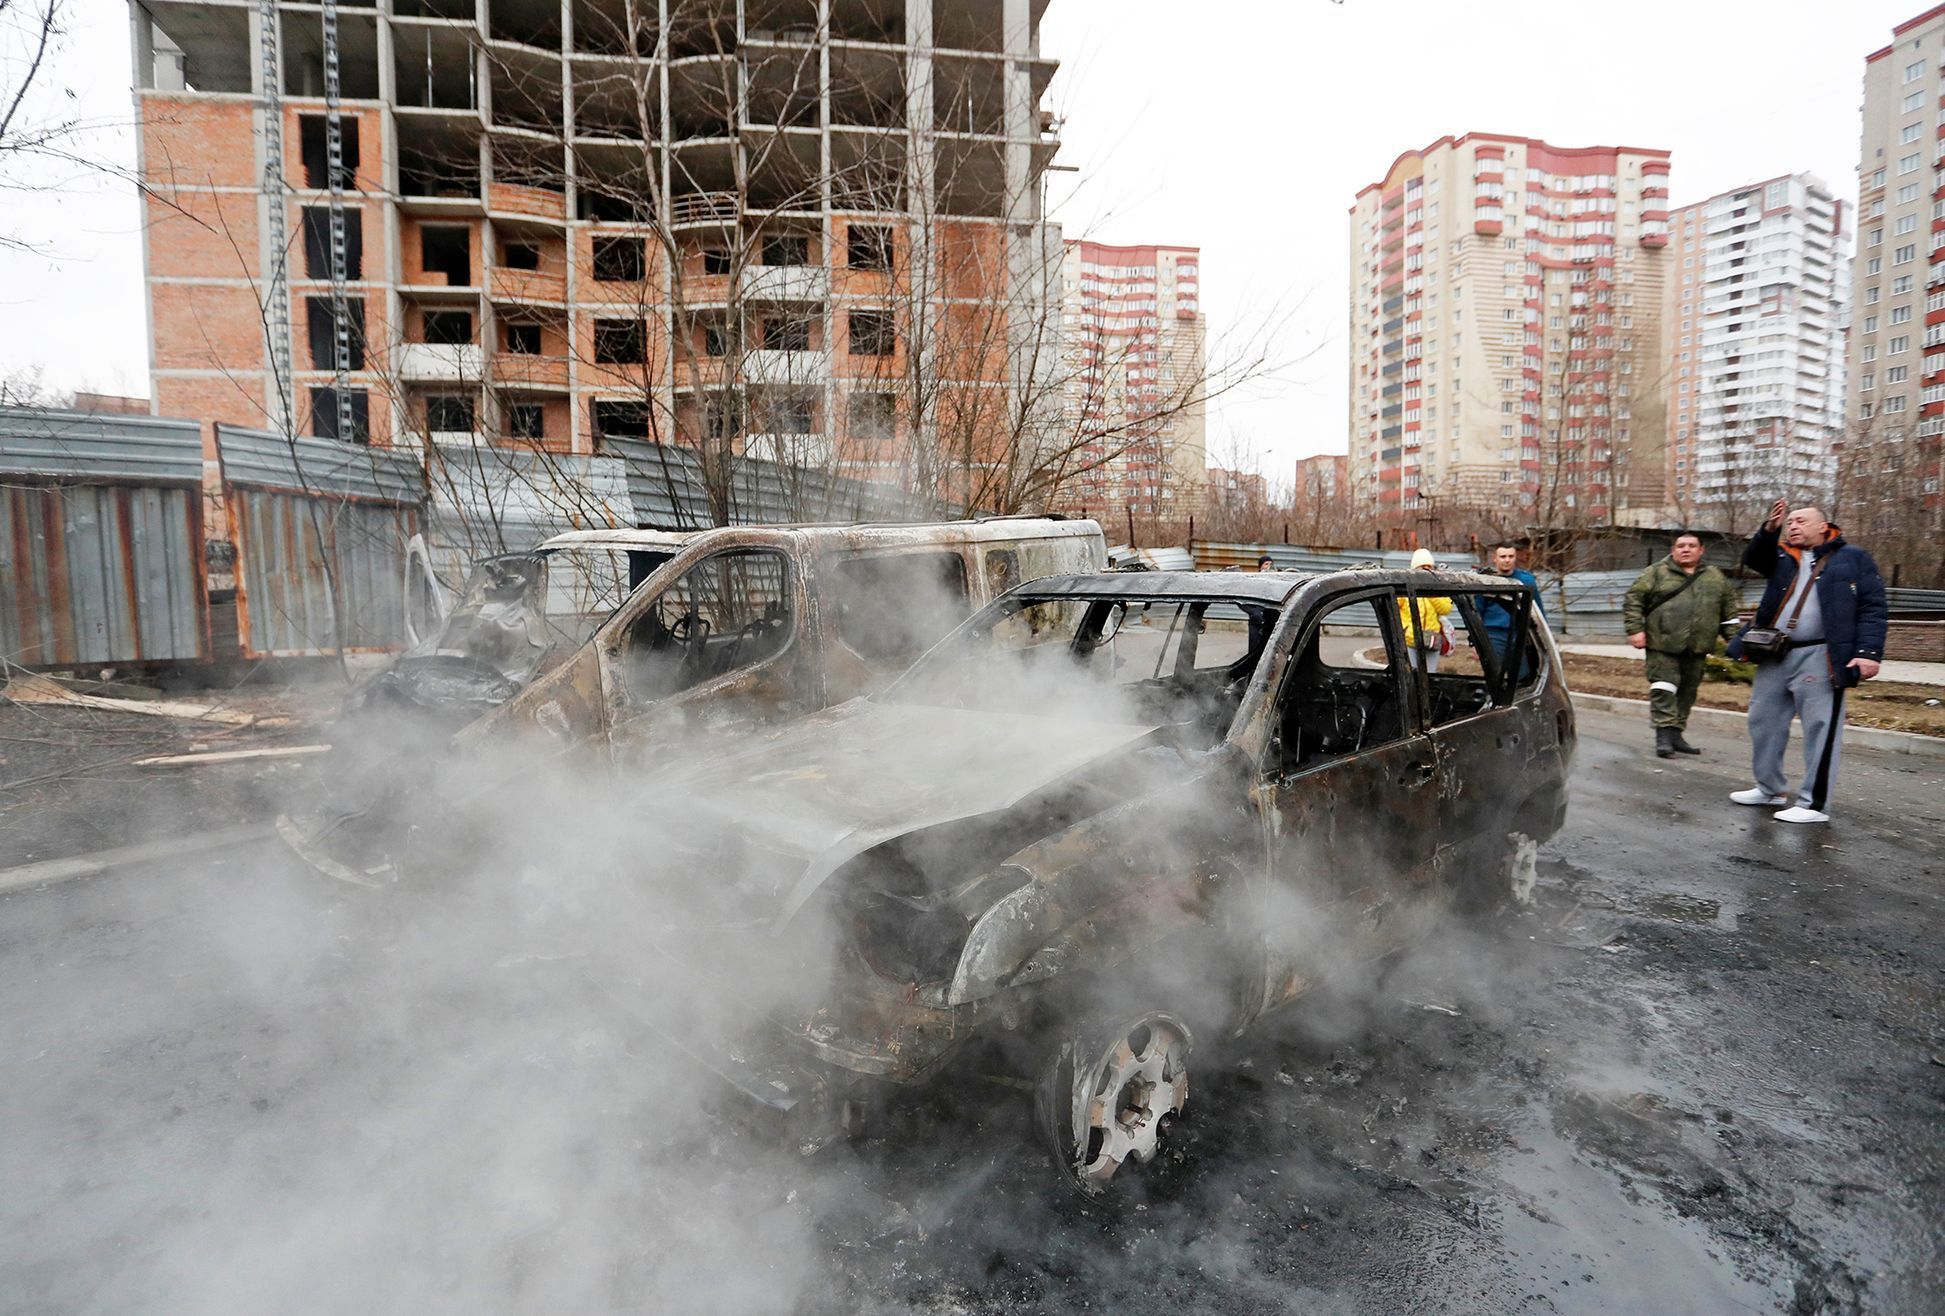 Foto / Ukrajina /  Rusko / Útok / Invaze / Výbuch / Bombardování  / 28. 2. 2022